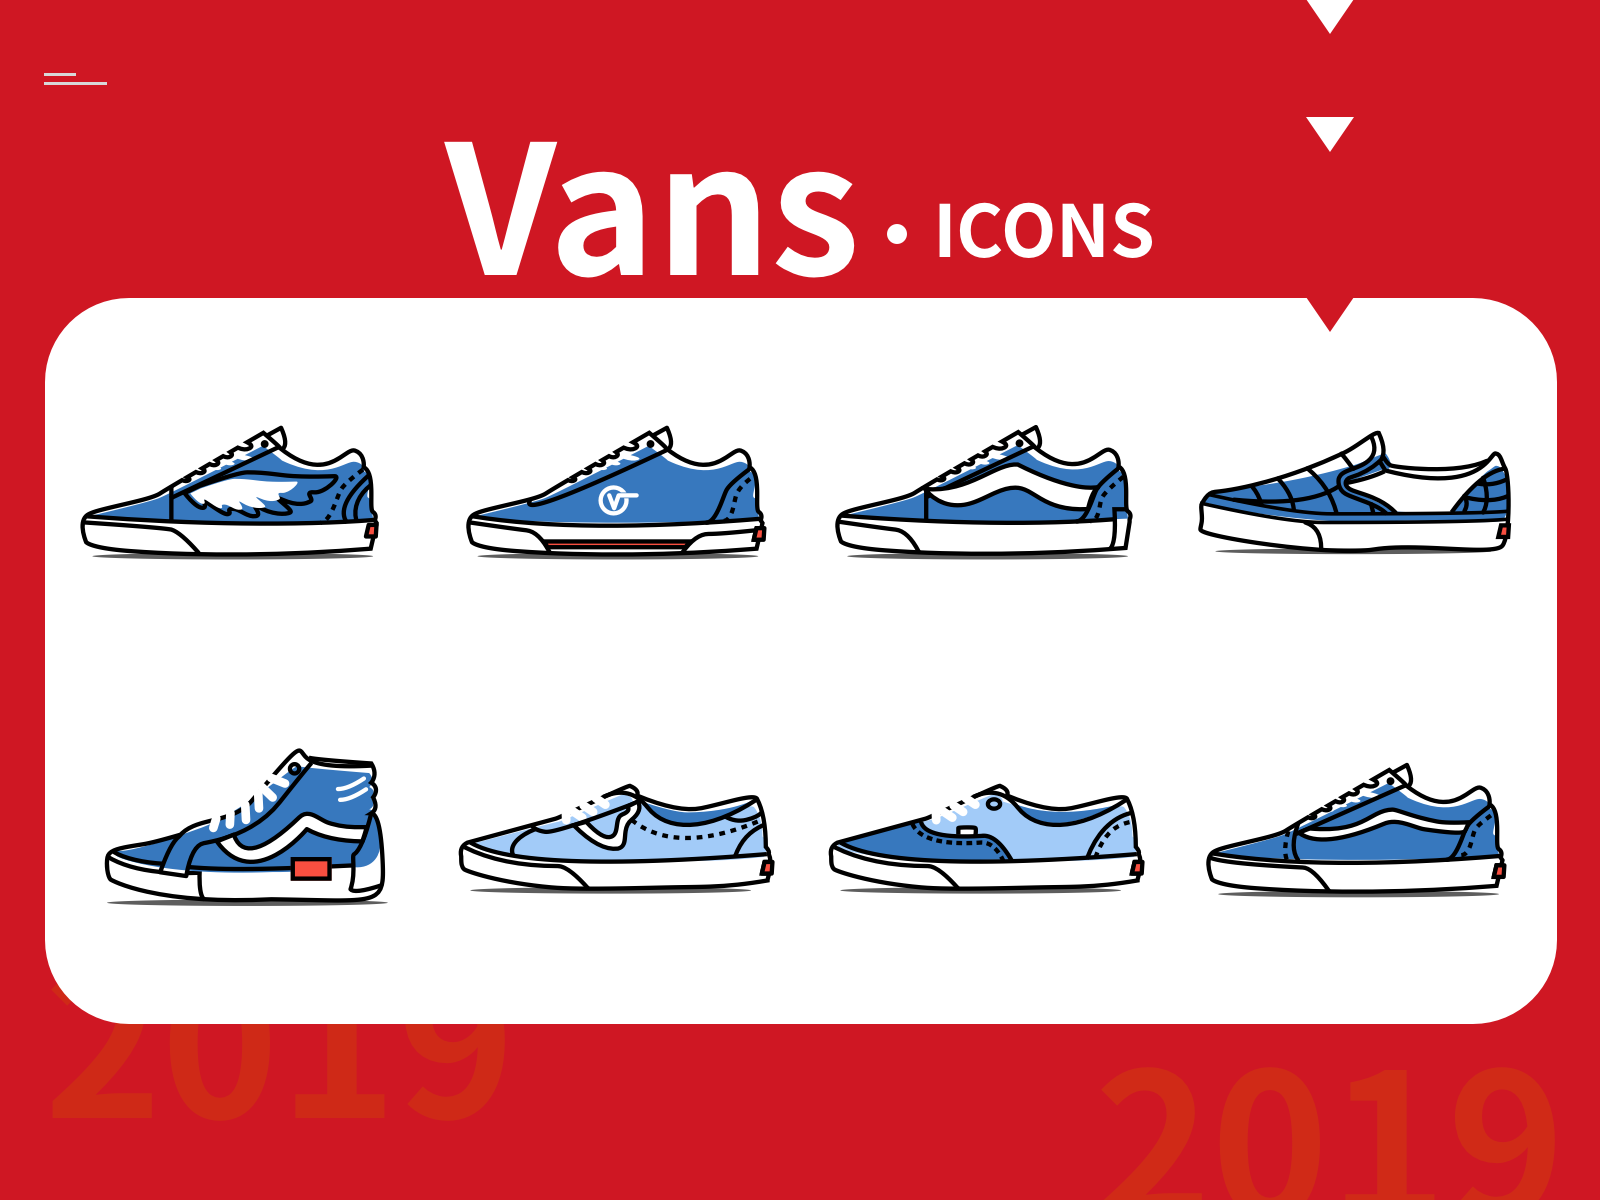 Vans Shoes designs, themes, templates 